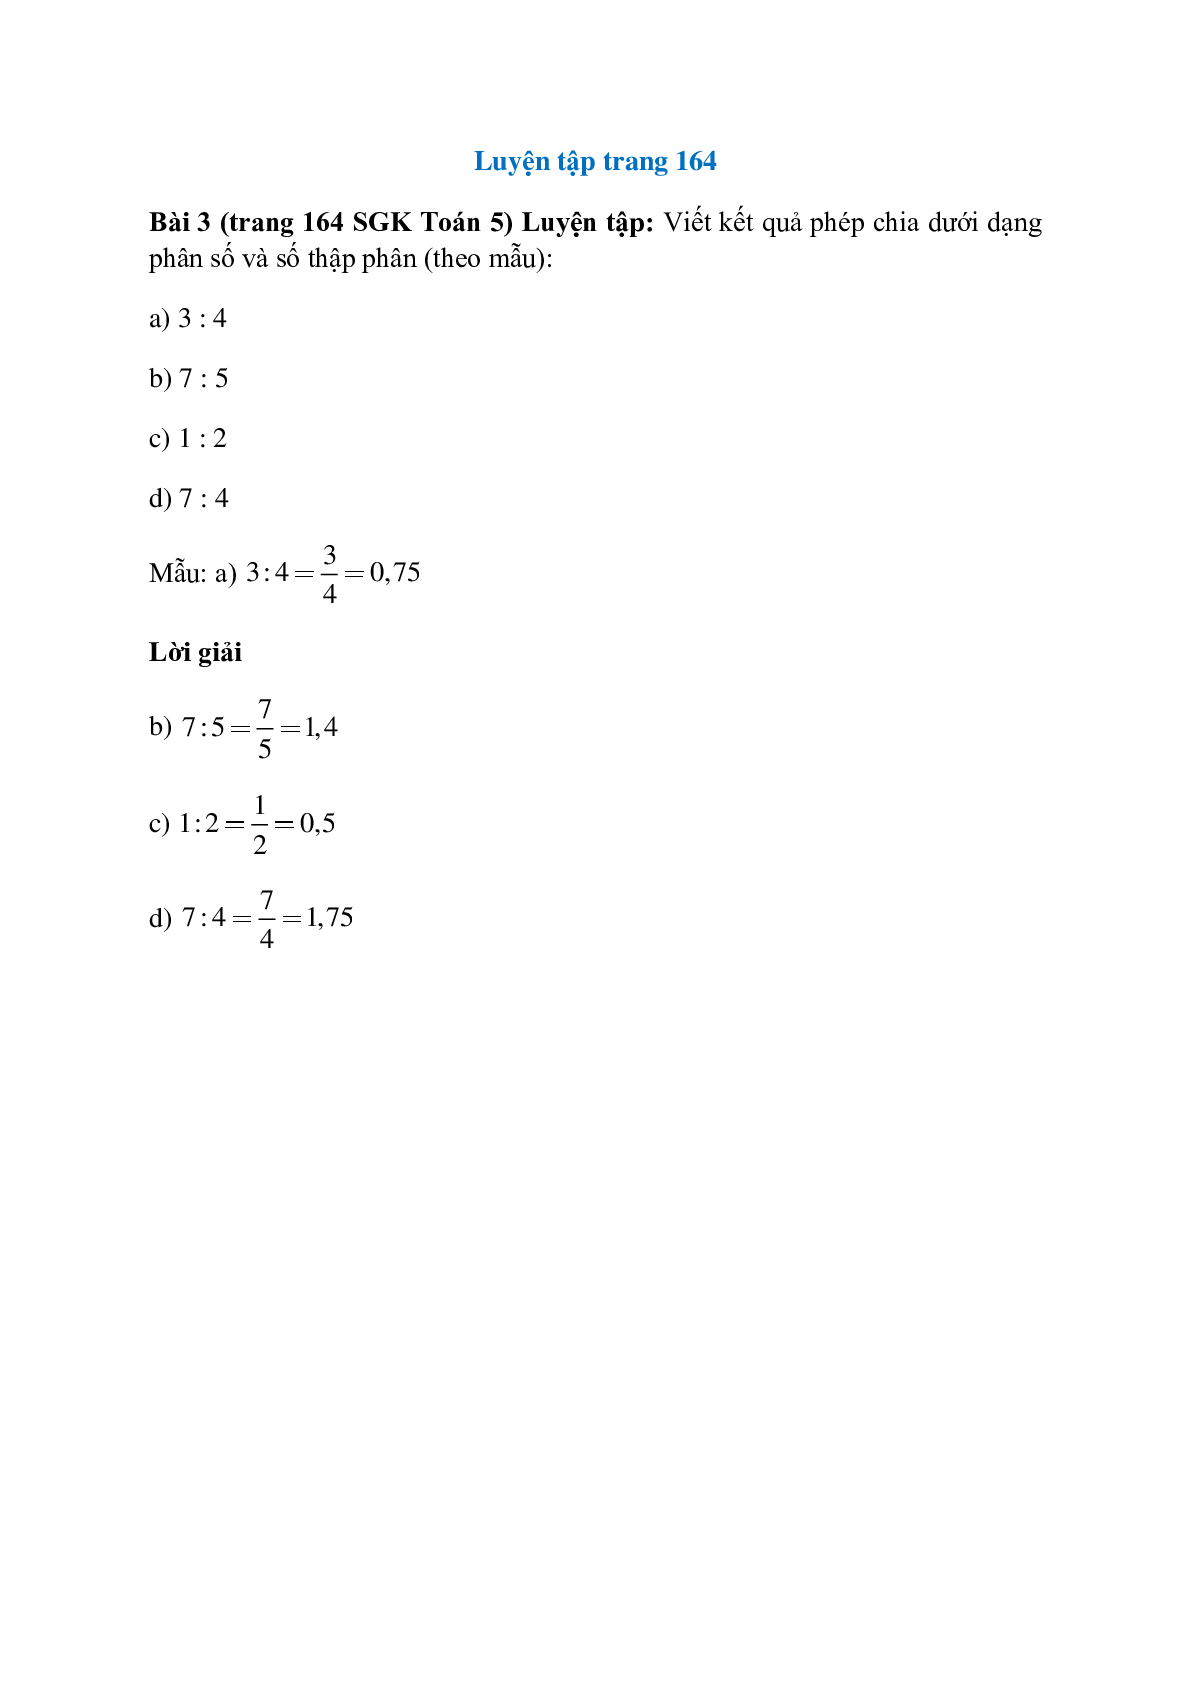 Viết kết quả phép chia dưới dạng phân số và số thập phân (theo mẫu): 3 : 4= 3/4 =0,75 (trang 1)